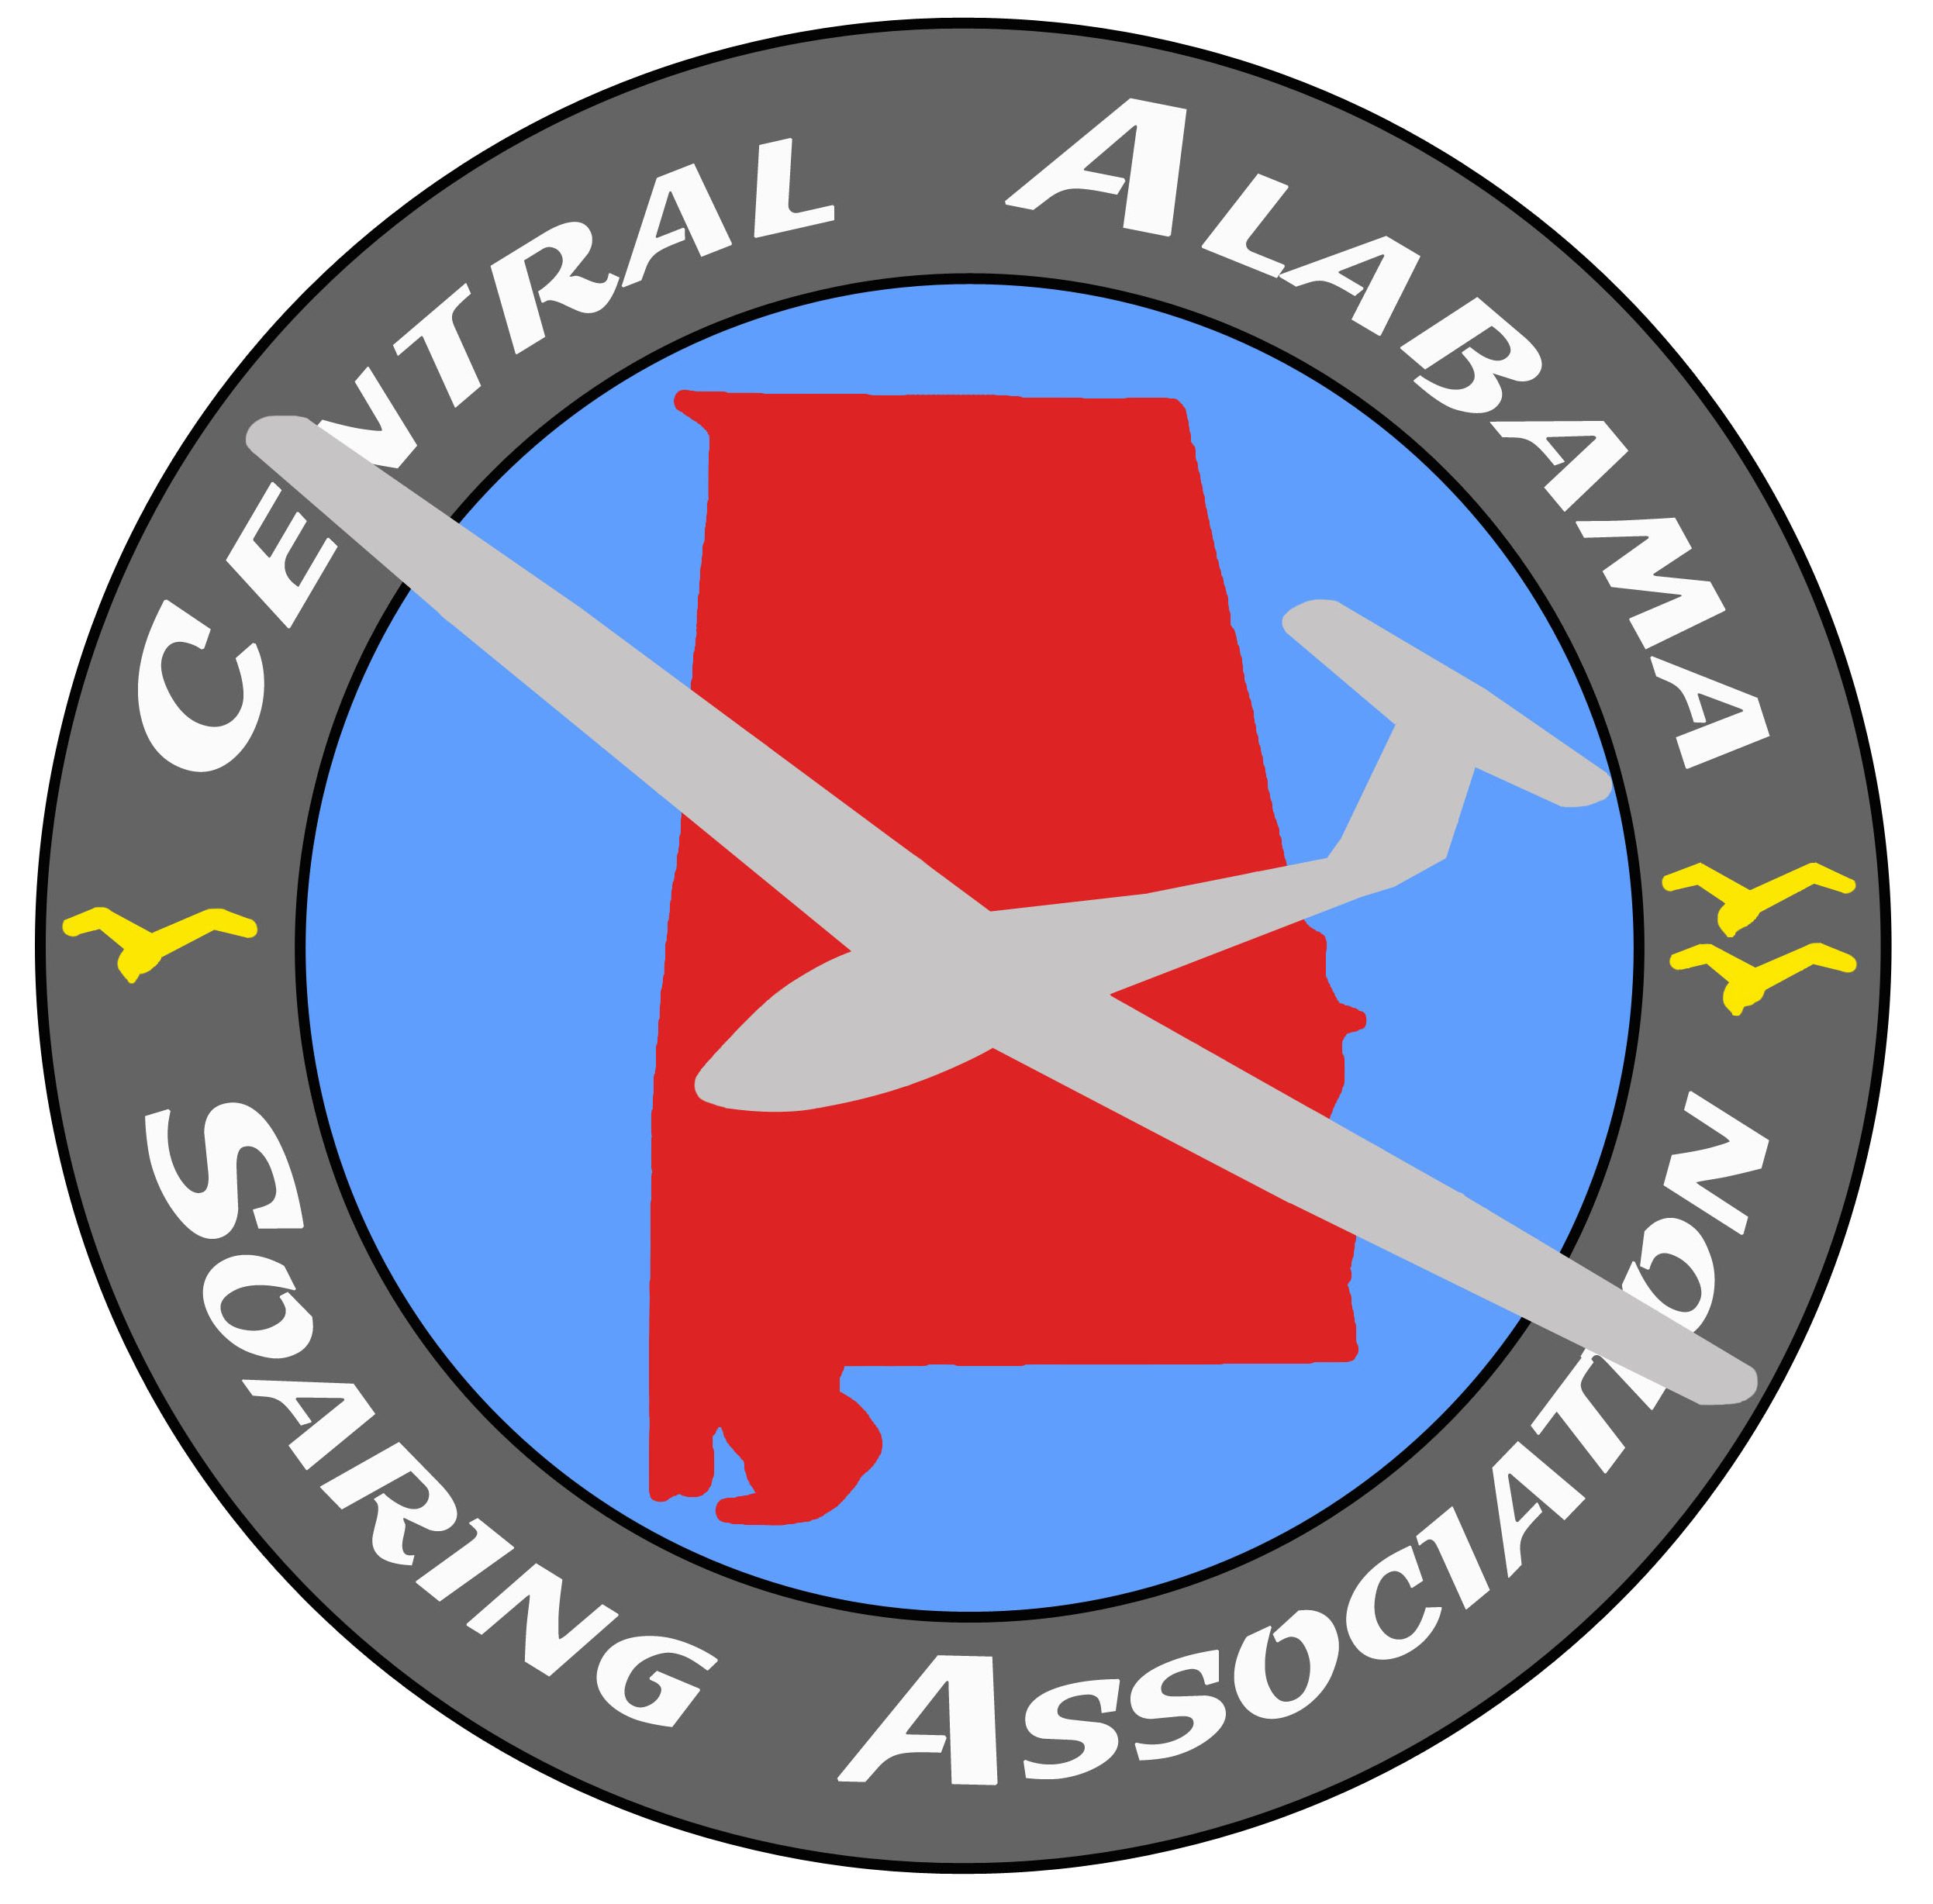 Central Alabama Soaring Association